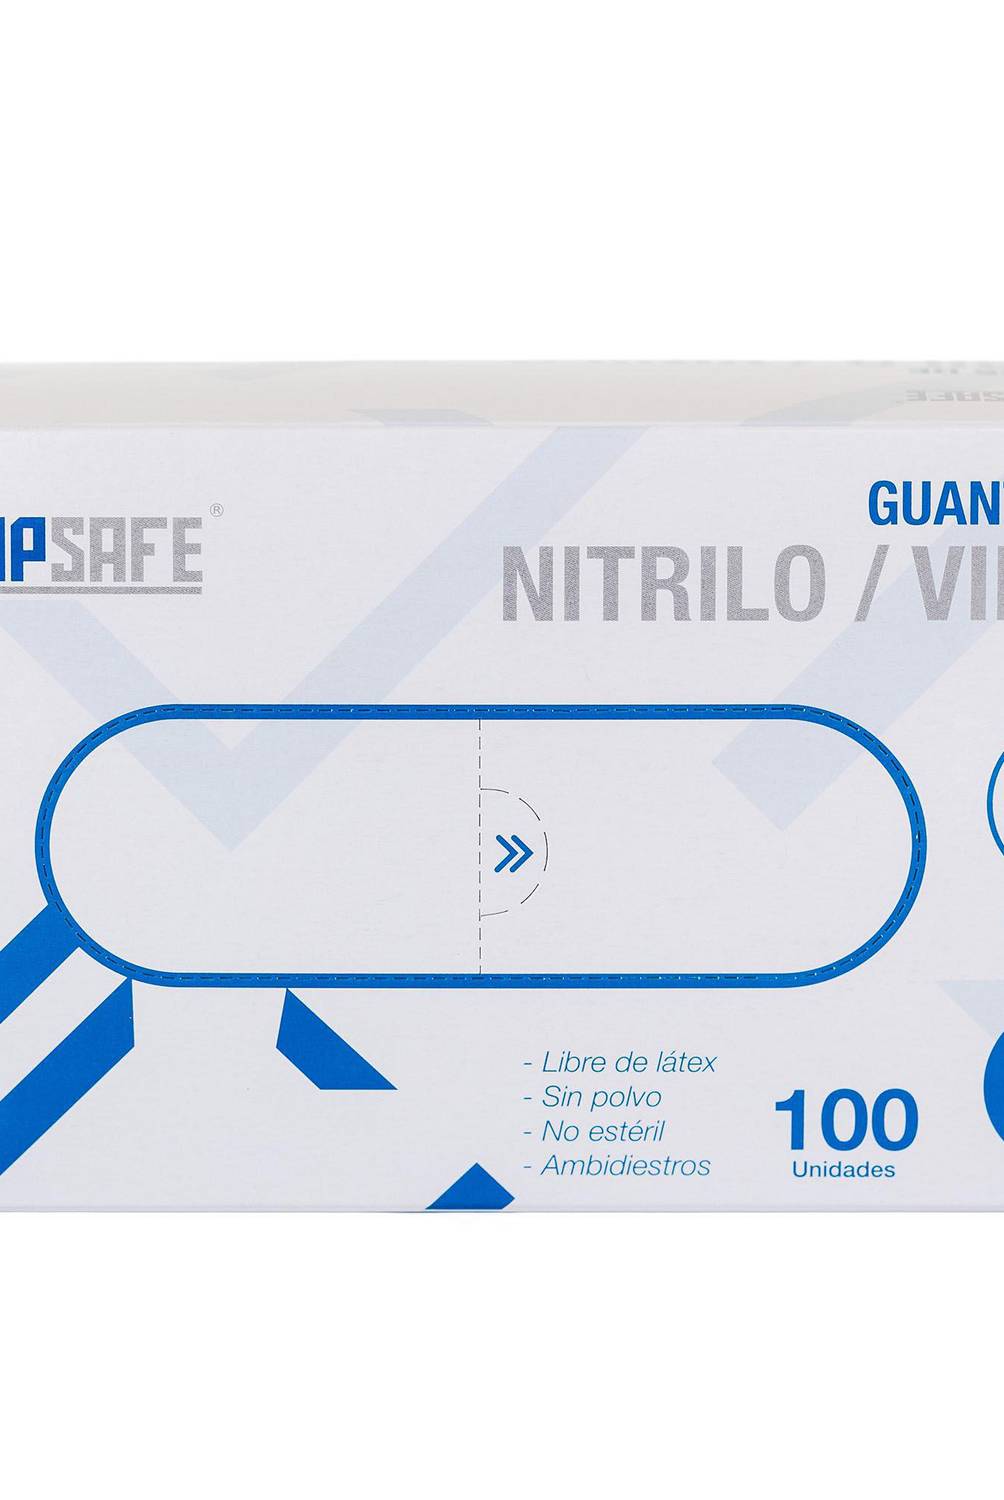 TOPSAFE - Guante desechable de nitrilo-vinilo talla L caja x 100 unidades